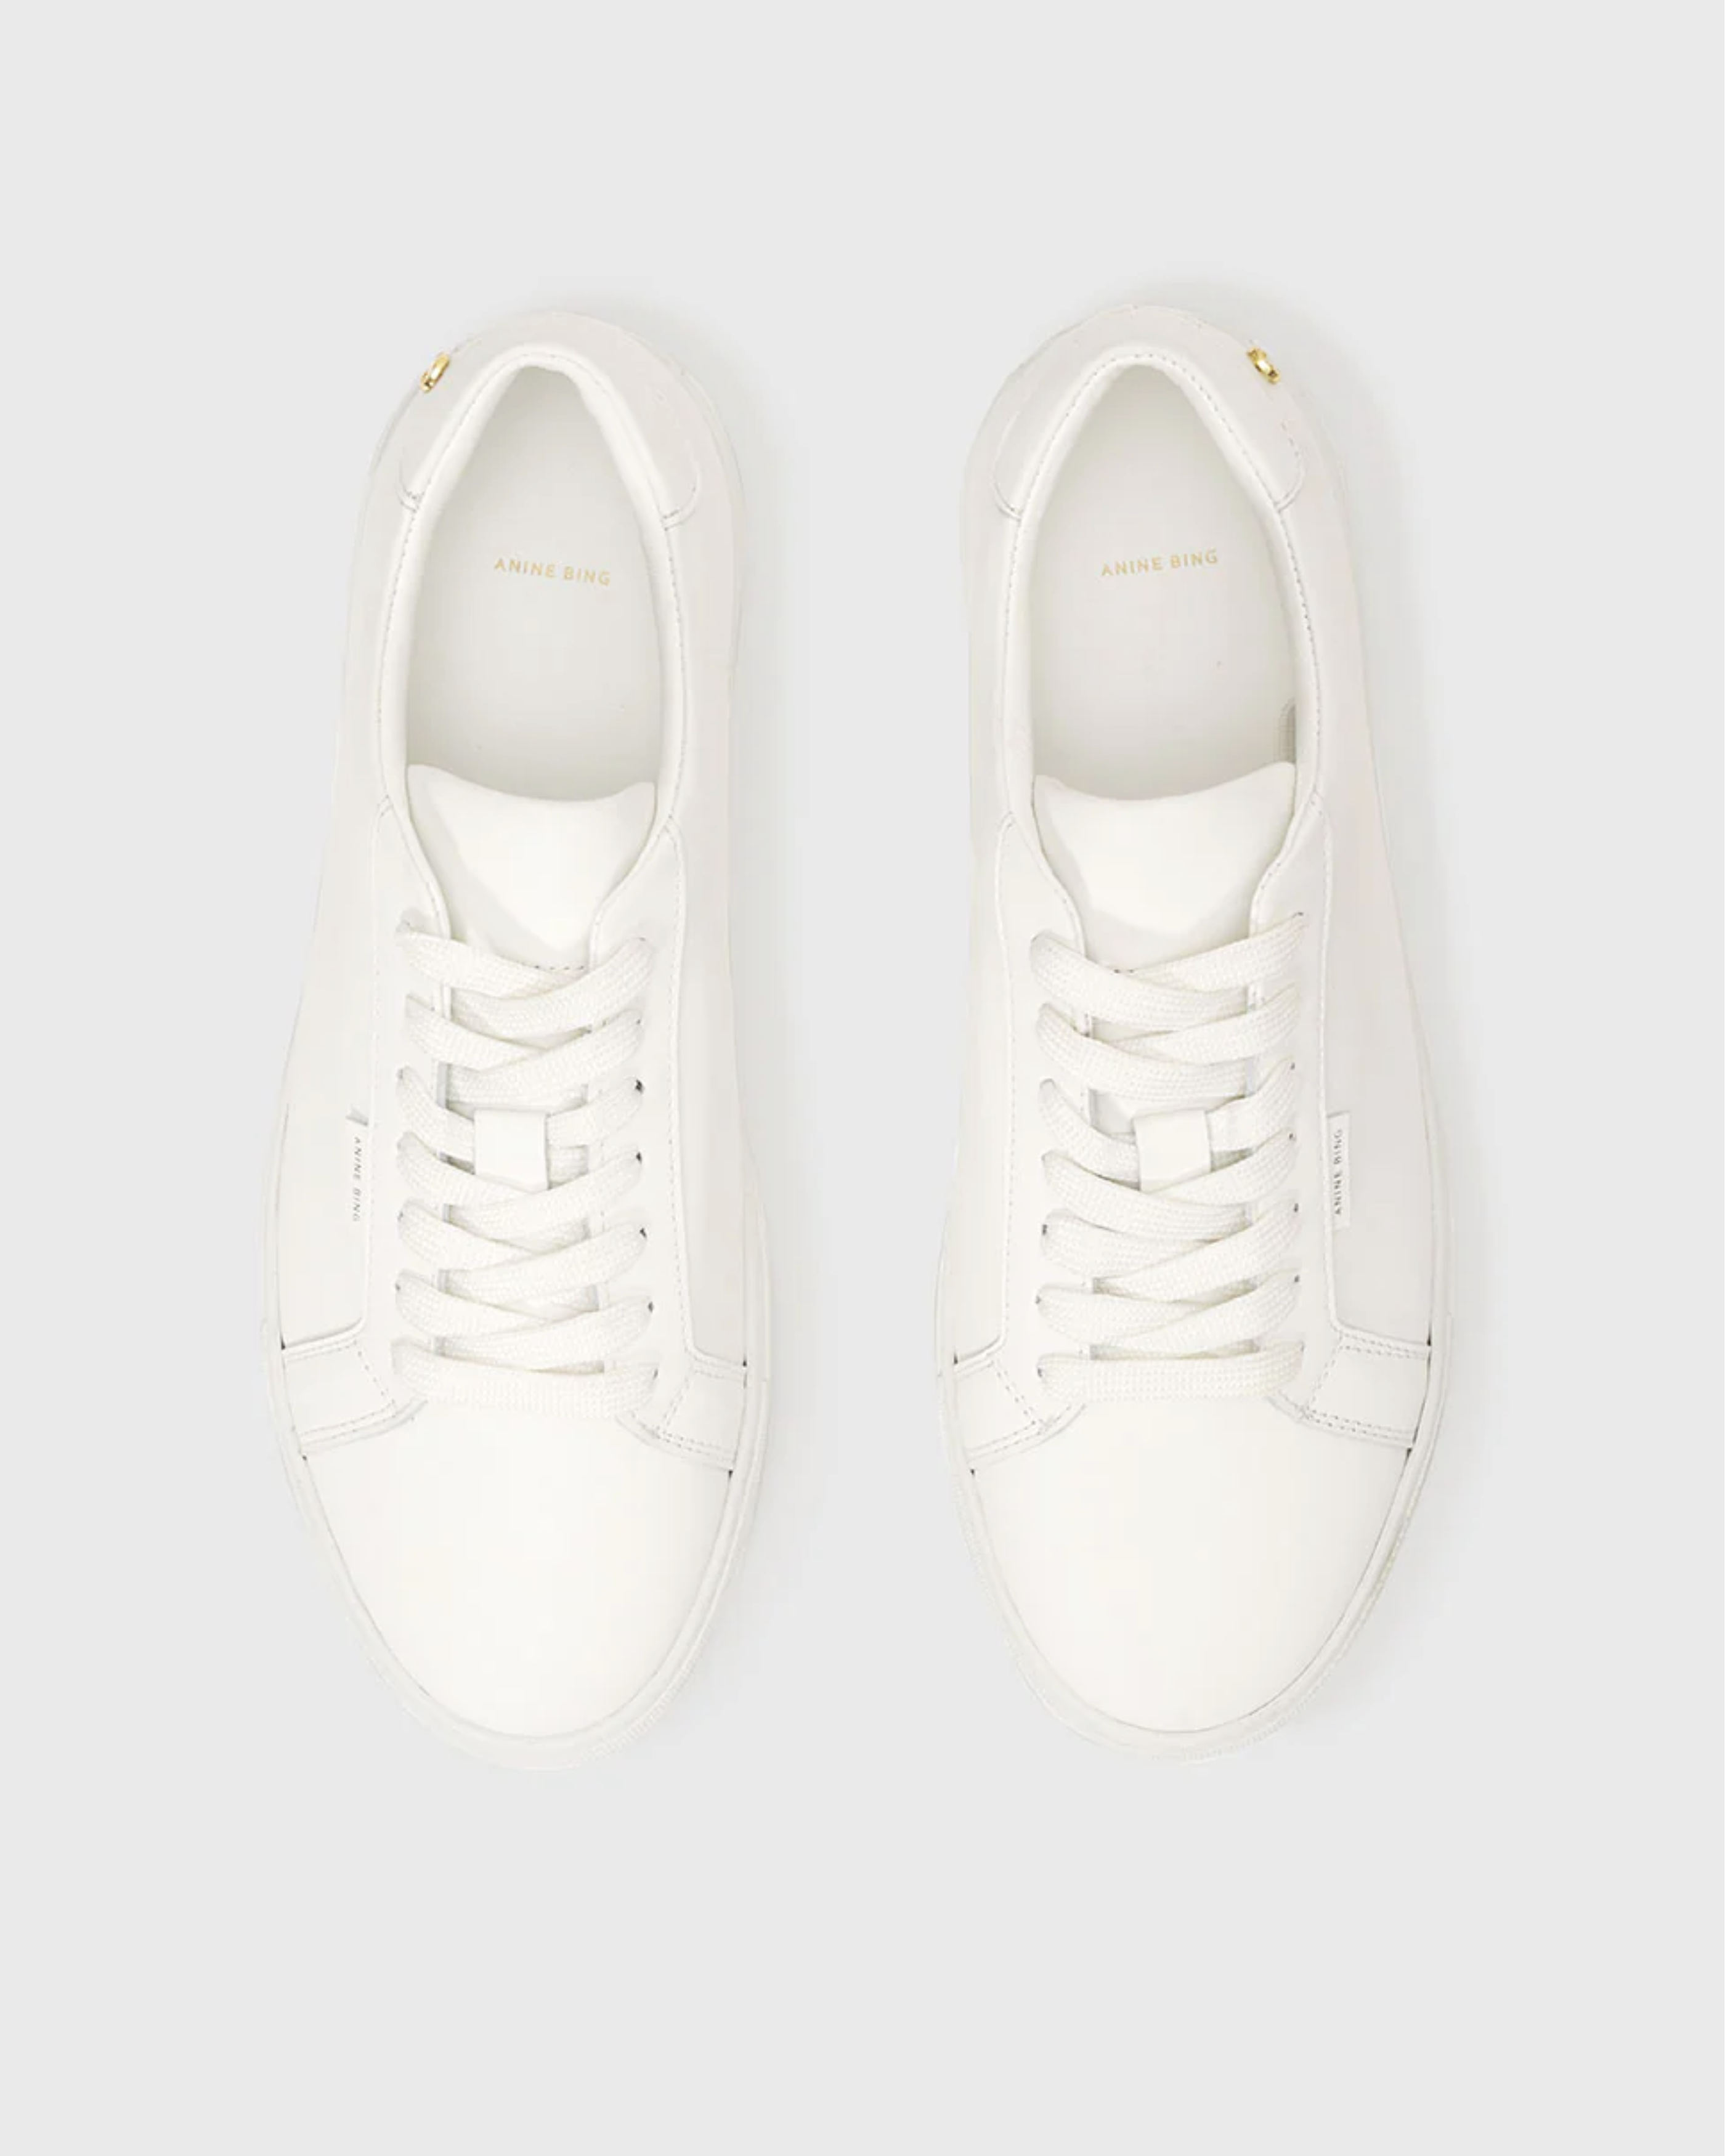 Anine Bing Liane Sneakers in White